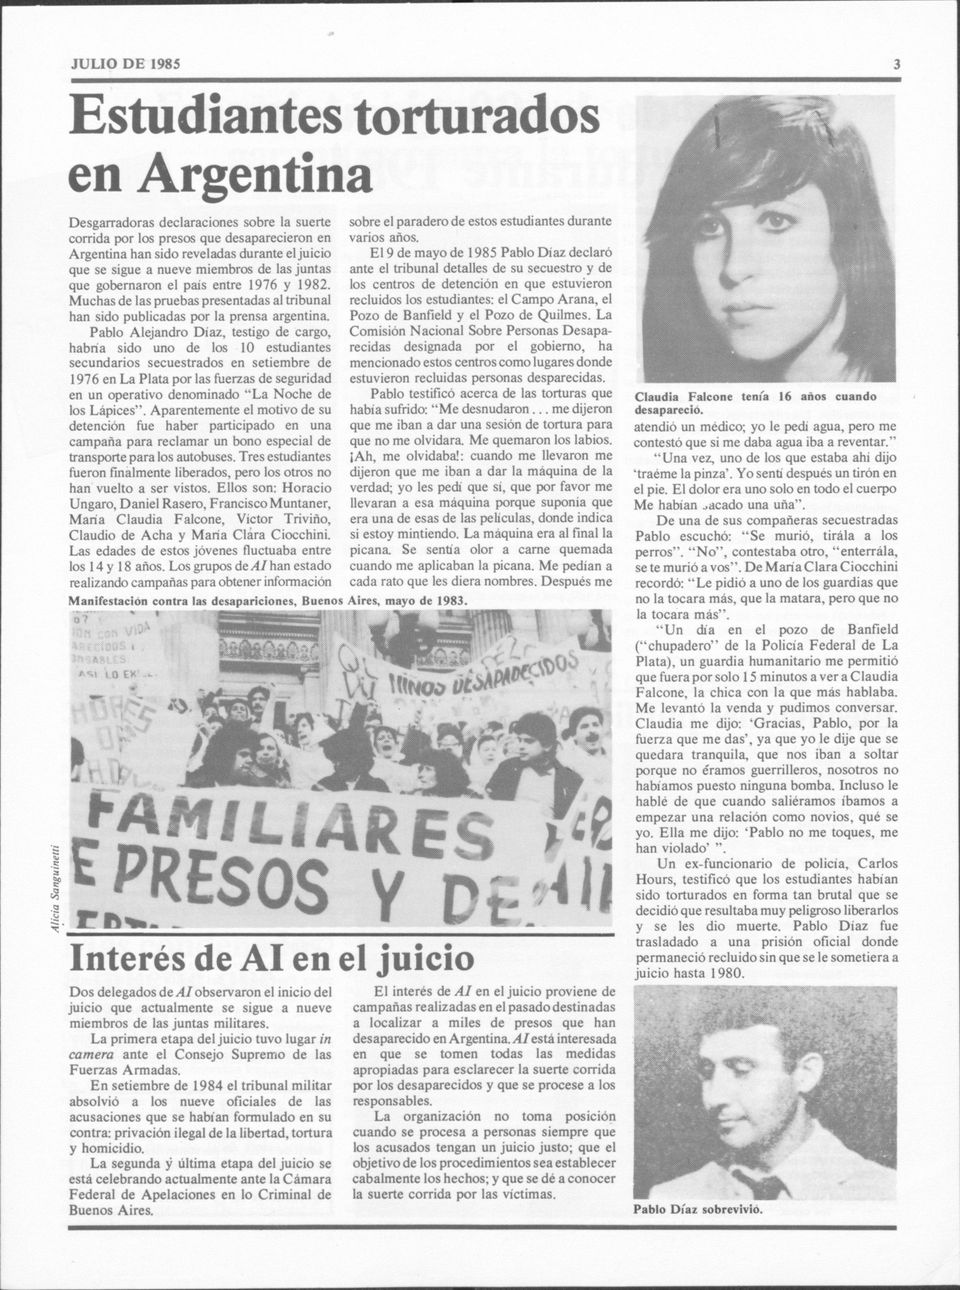 Pablo Alejandro Diaz, testigo cargo, habria sido uno los 10 estudiantes secundarios secuestrados en setiembre 1976 en La Plata por las fuerzas seguridad en un operativo nominado"la Noche los Lápices".